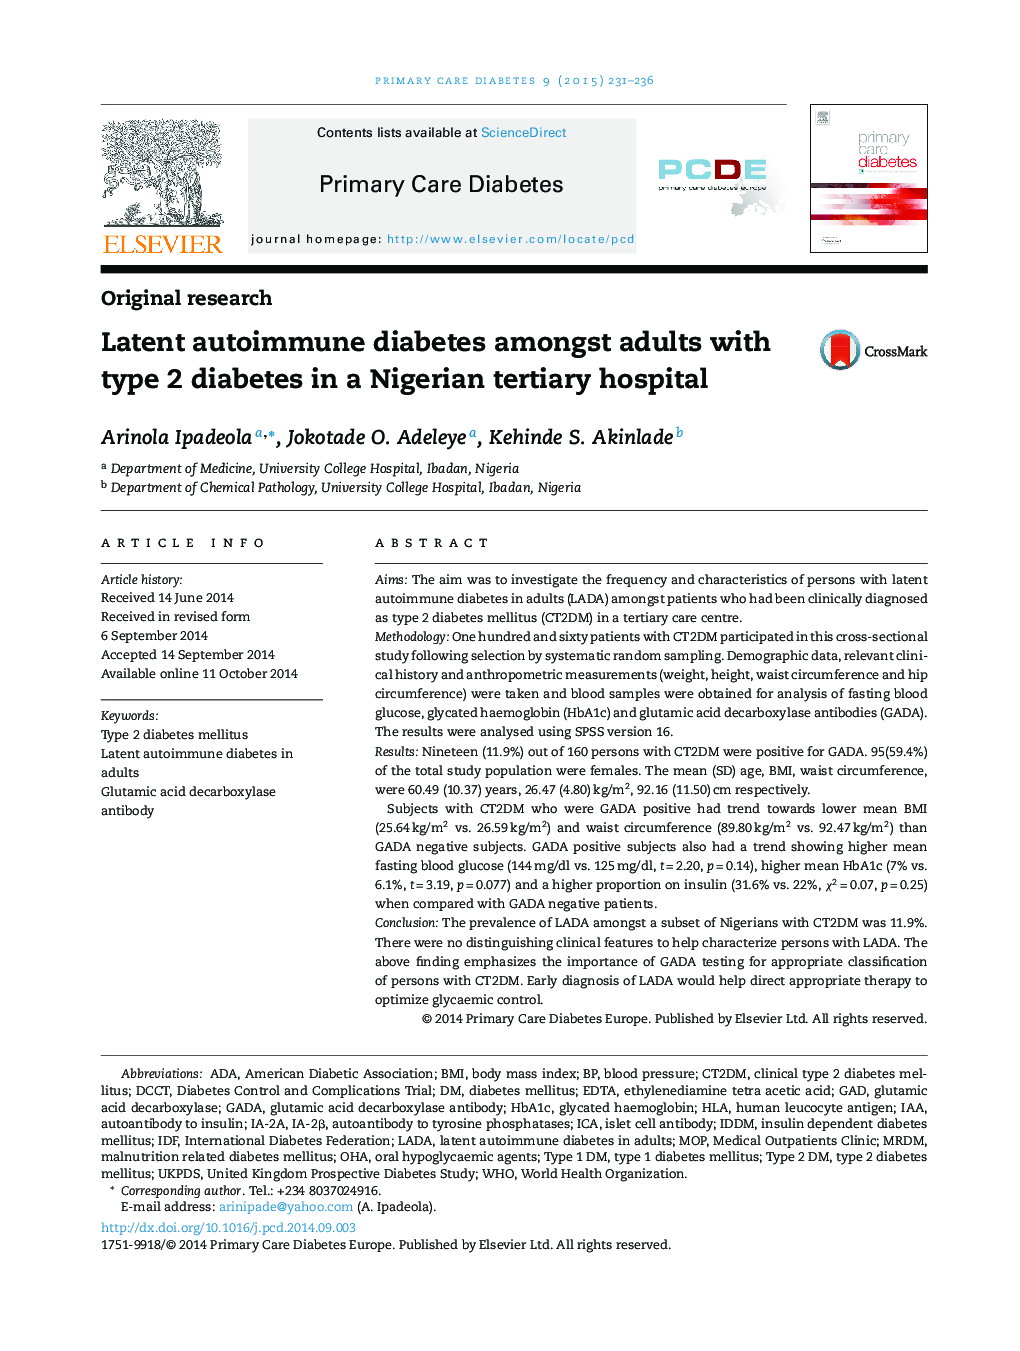 دیابت بیخوابی خود ایمنی در بزرگسالان مبتلا به دیابت نوع 2 در یک بیمارستان عالی رتبه نیجریه 